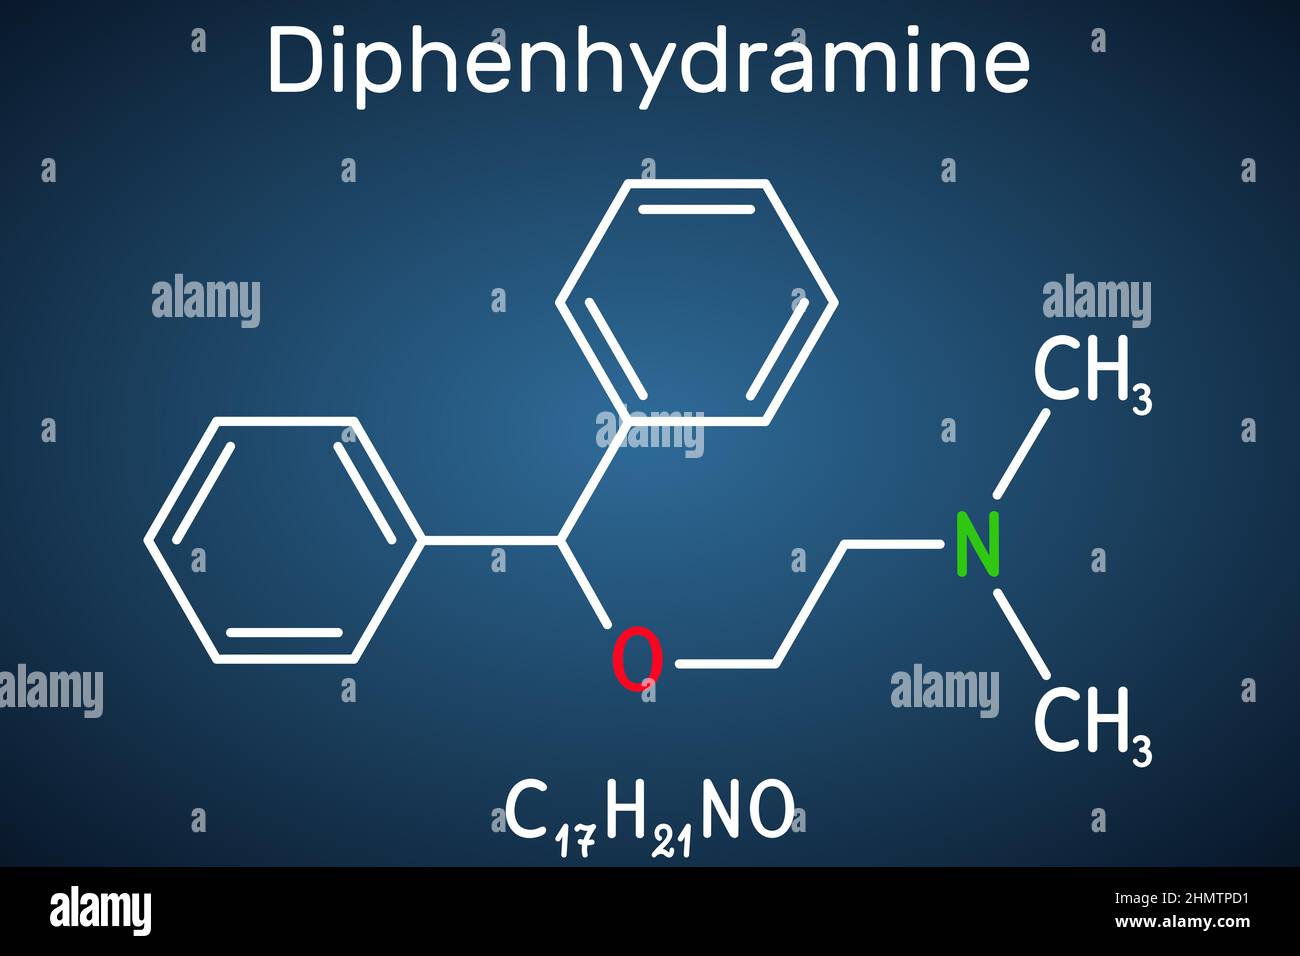 Diphenhydramin, Molekül. Es ist ein H1-Rezeptor-Antihistamin, das bei der Behandlung von saisonalen Allergien eingesetzt wird. Strukturelle chemische Formel auf dem dunkelblauen b Stock Vektor